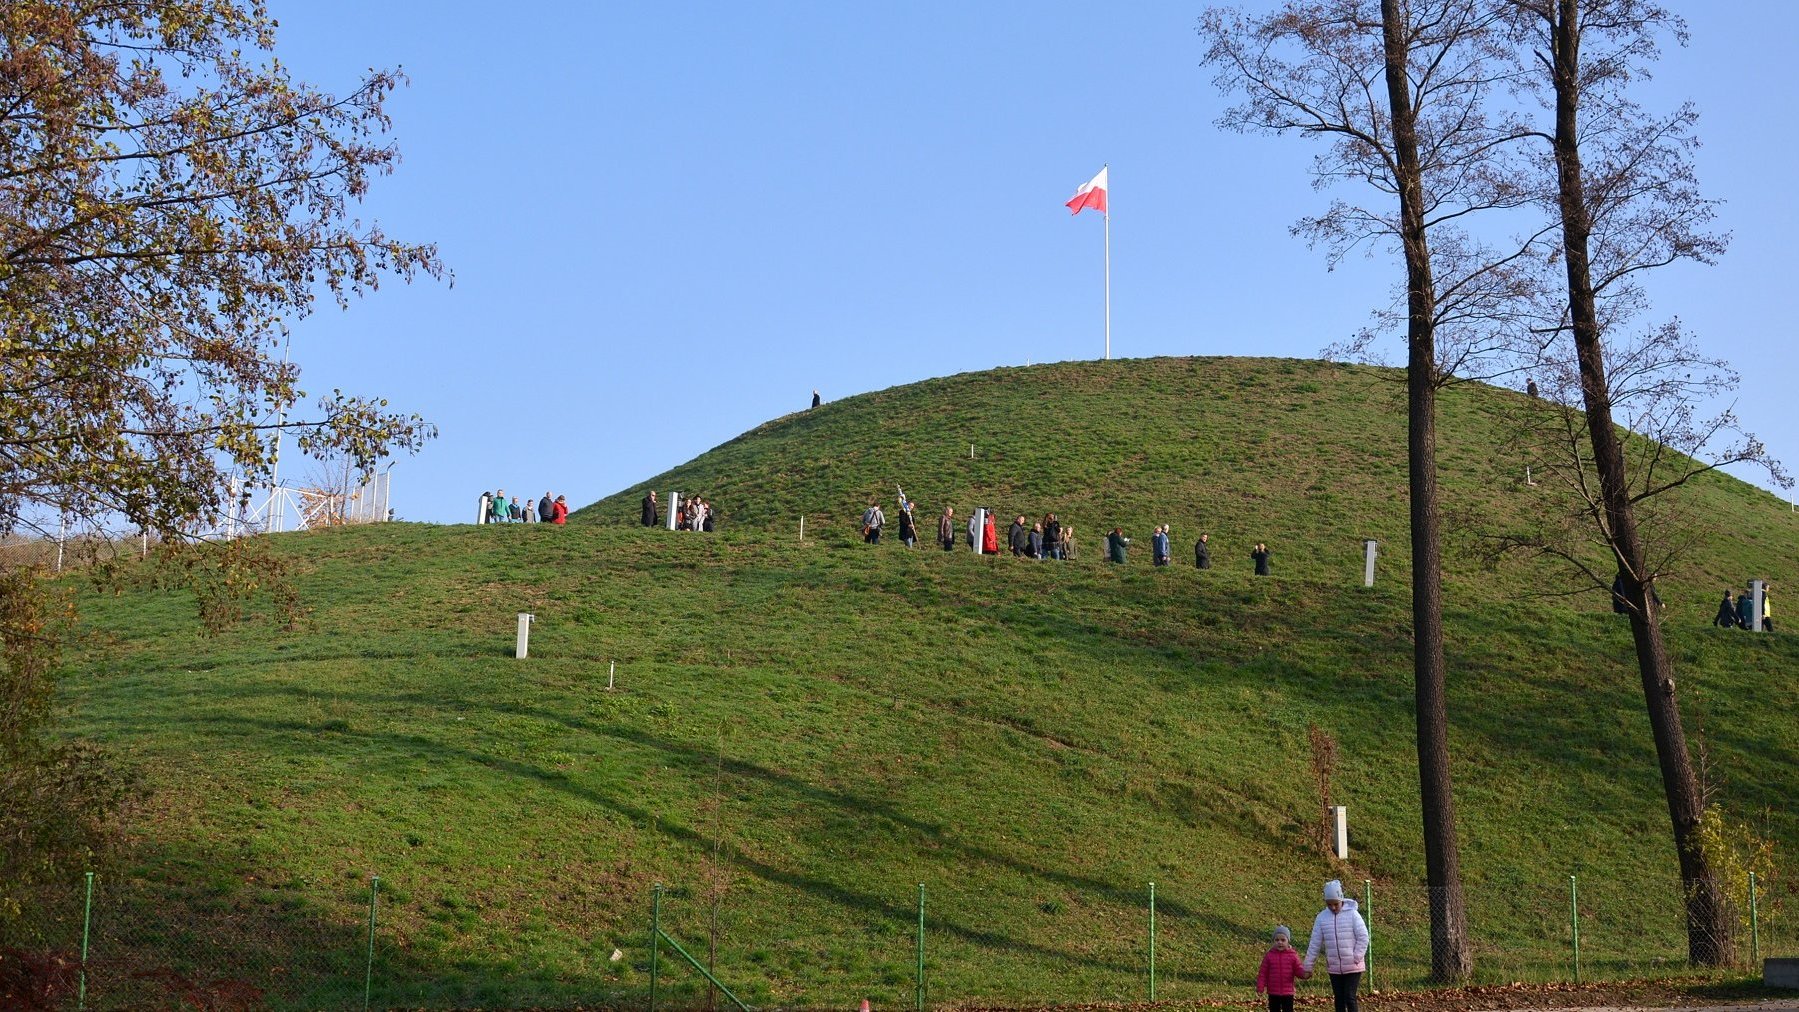 Galeria zdjęć przedstawia kopiec ziemny porośnięty trawą, na jego szczycie powiewa flaga Polski.